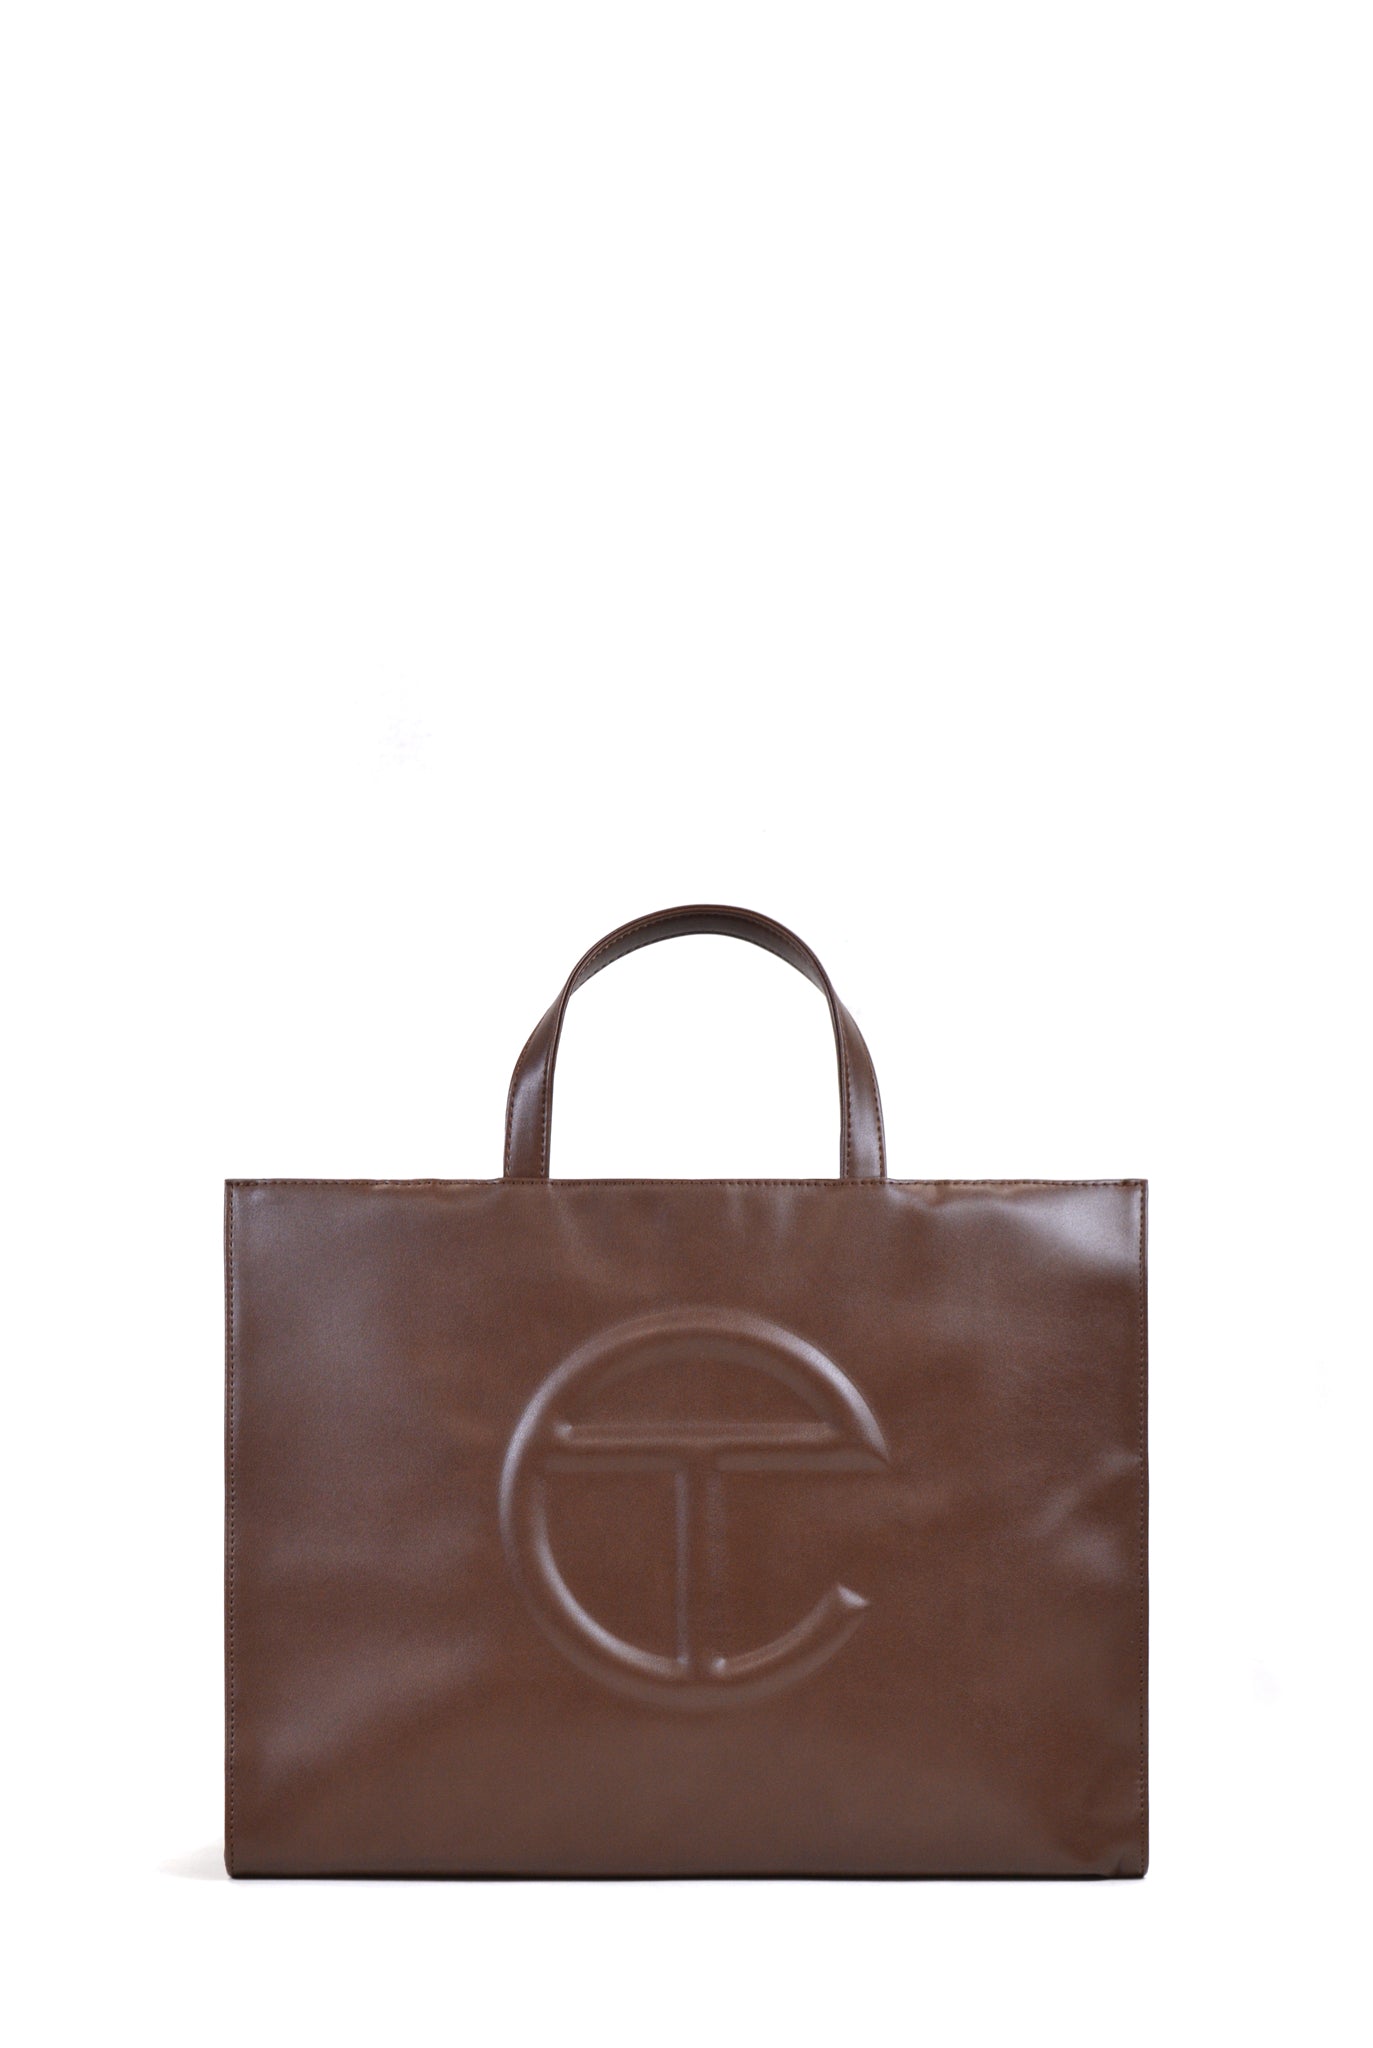 Telfar Medium Shopping Bag, Brown